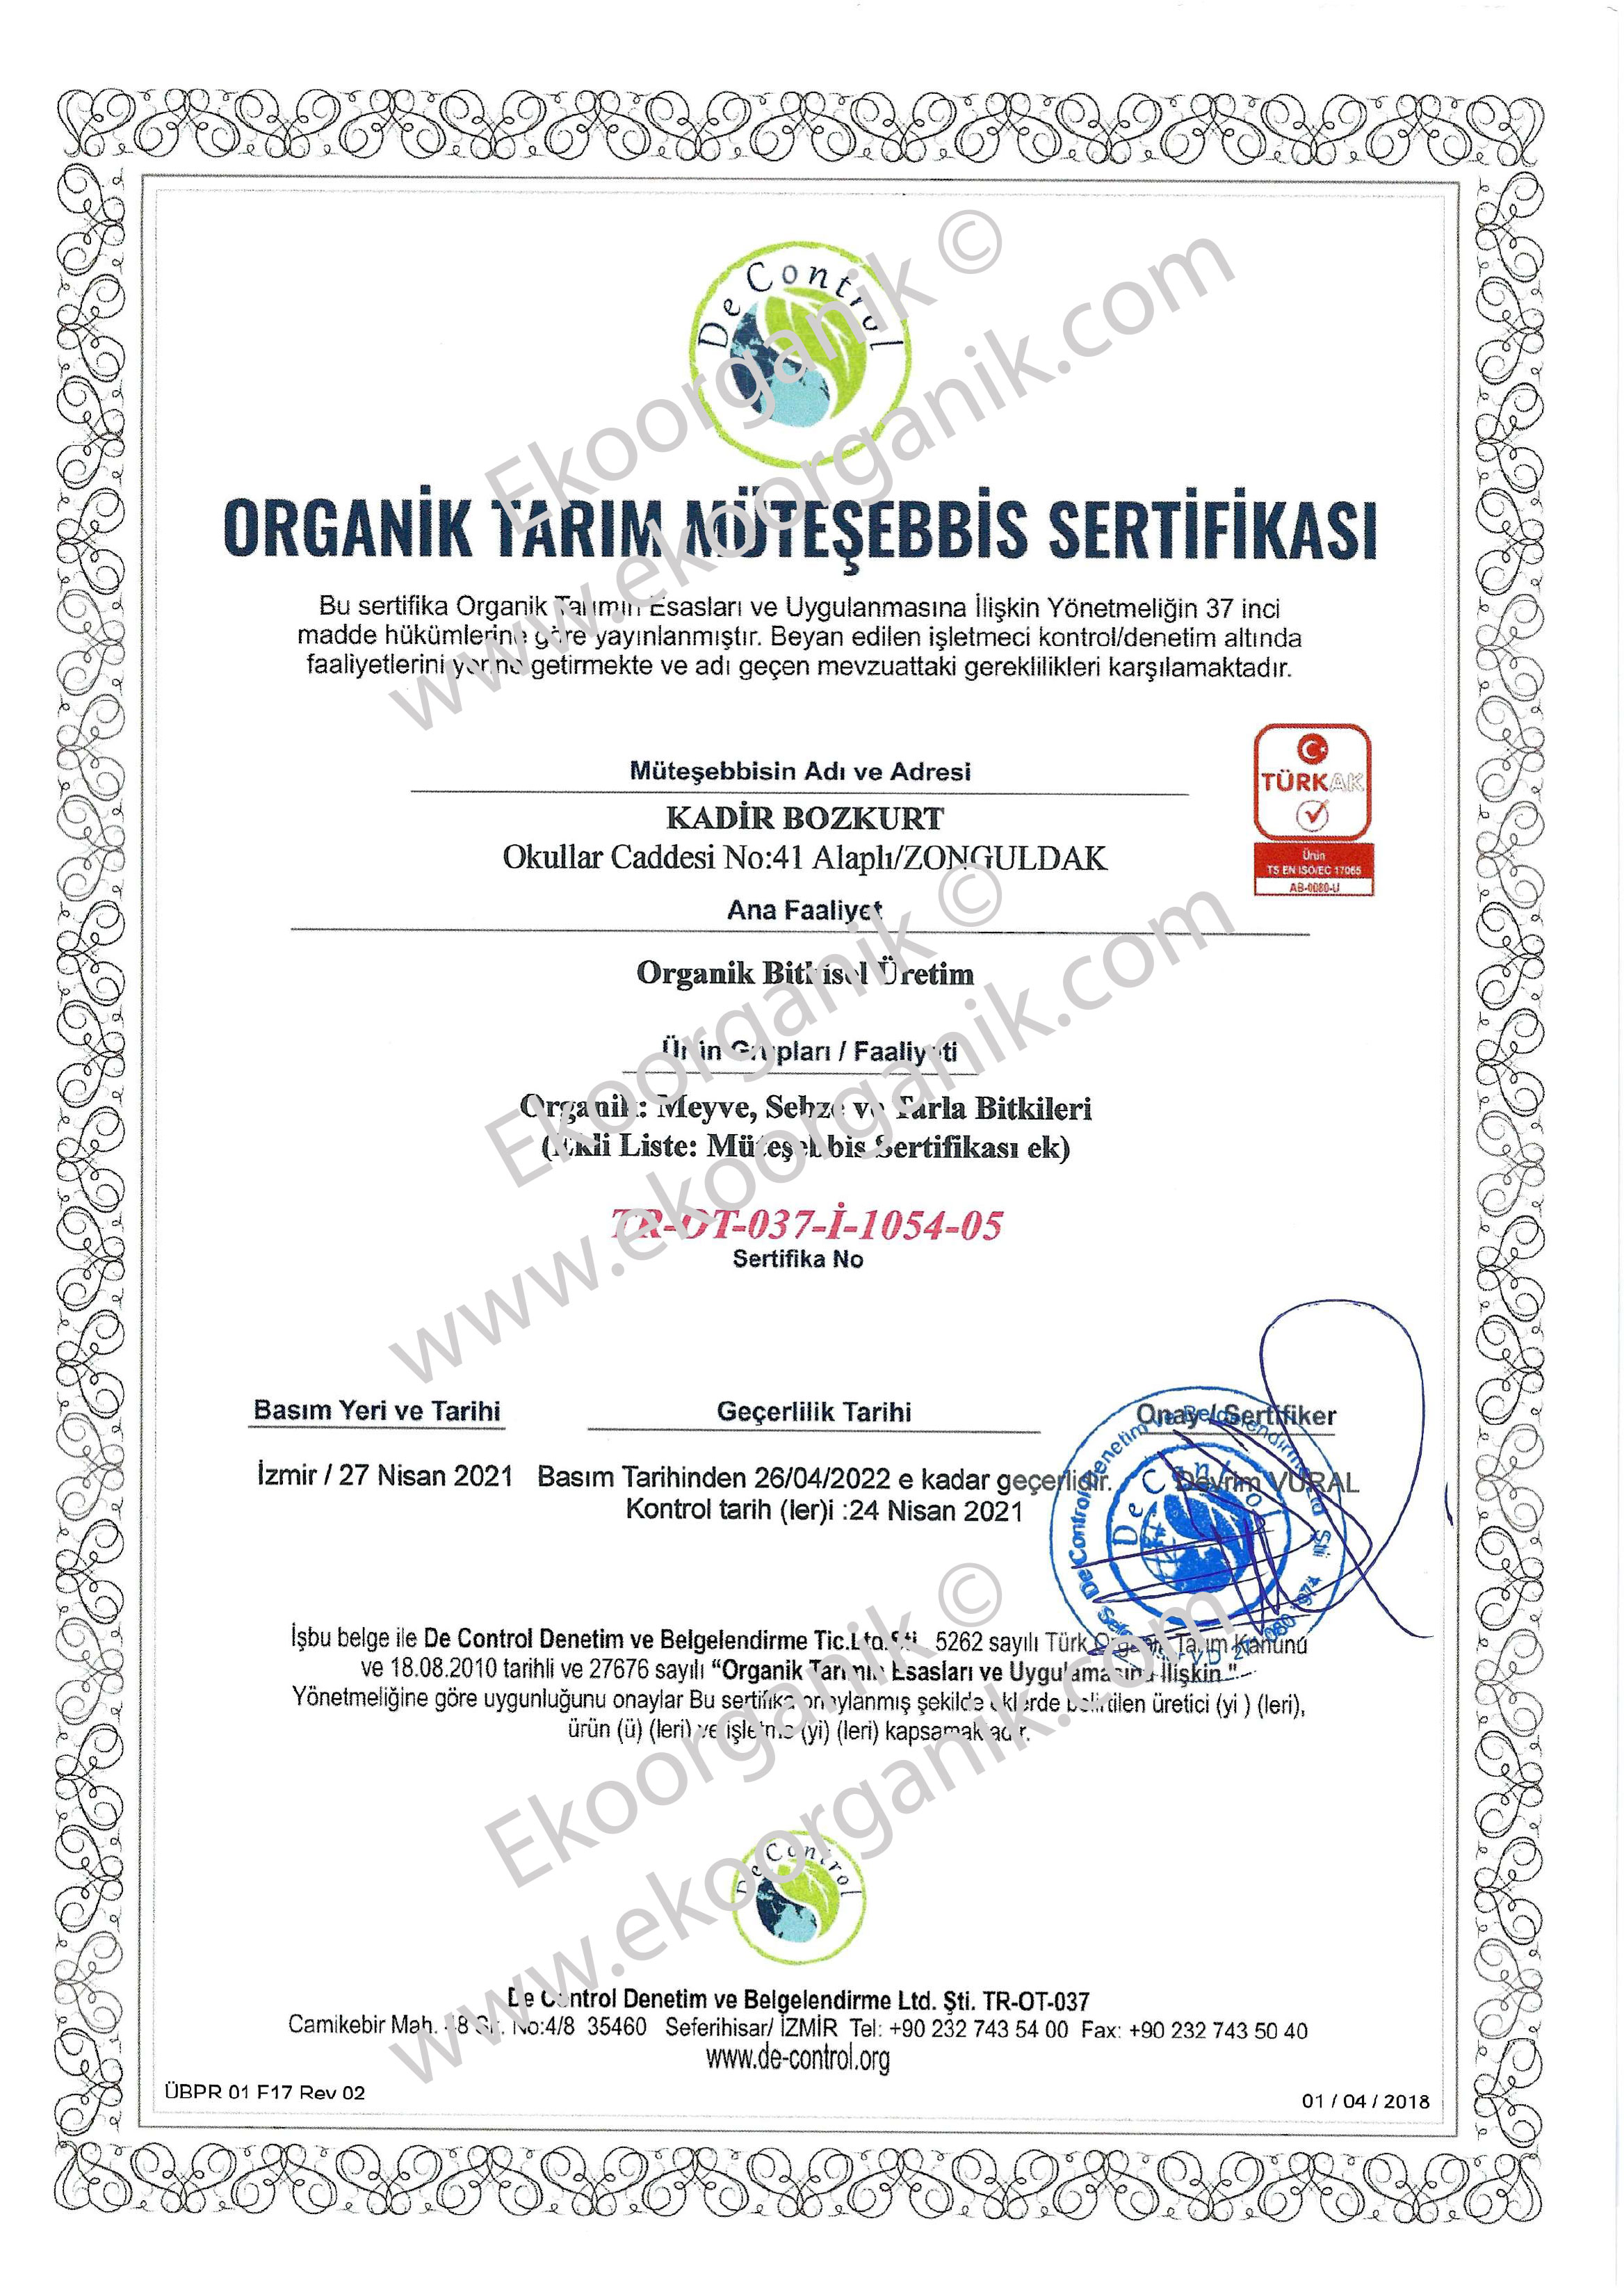 Ayten Hanımın Organik Çiftliği, Zonguldak Alaplı De Control Sertifika